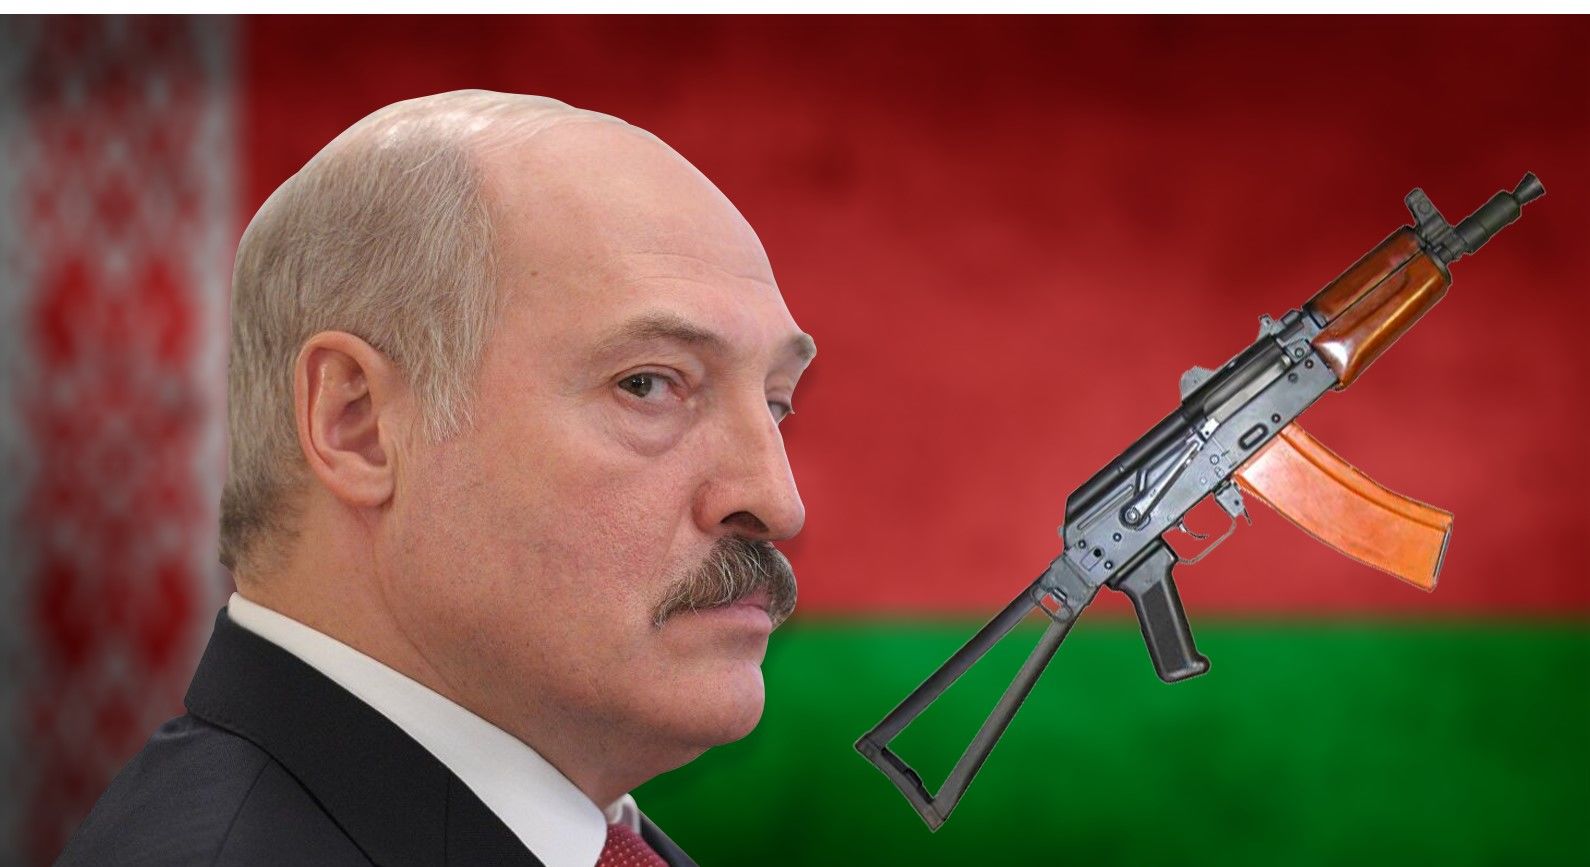 Лукашенко: Беларусь пойдет против Украины в случае новой войны на Донбассе